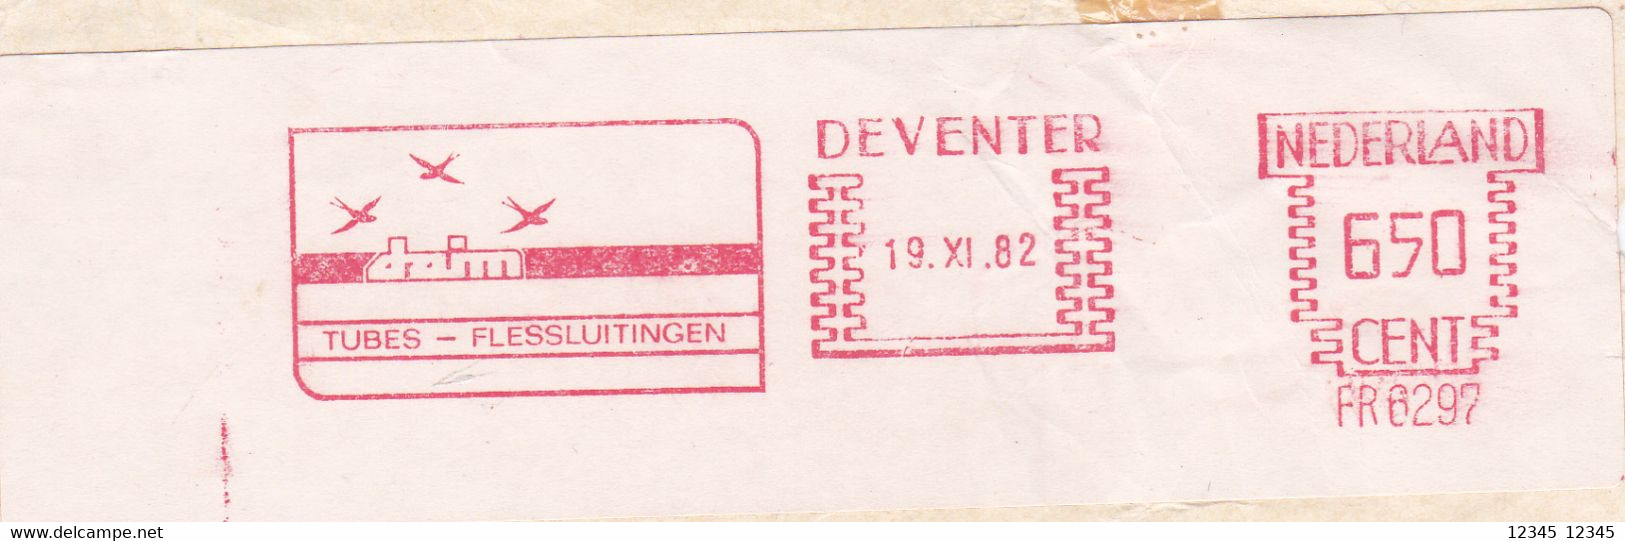 Nederland 1982, Daim Tubes-flessluitingen, Deventer - Franking Machines (EMA)